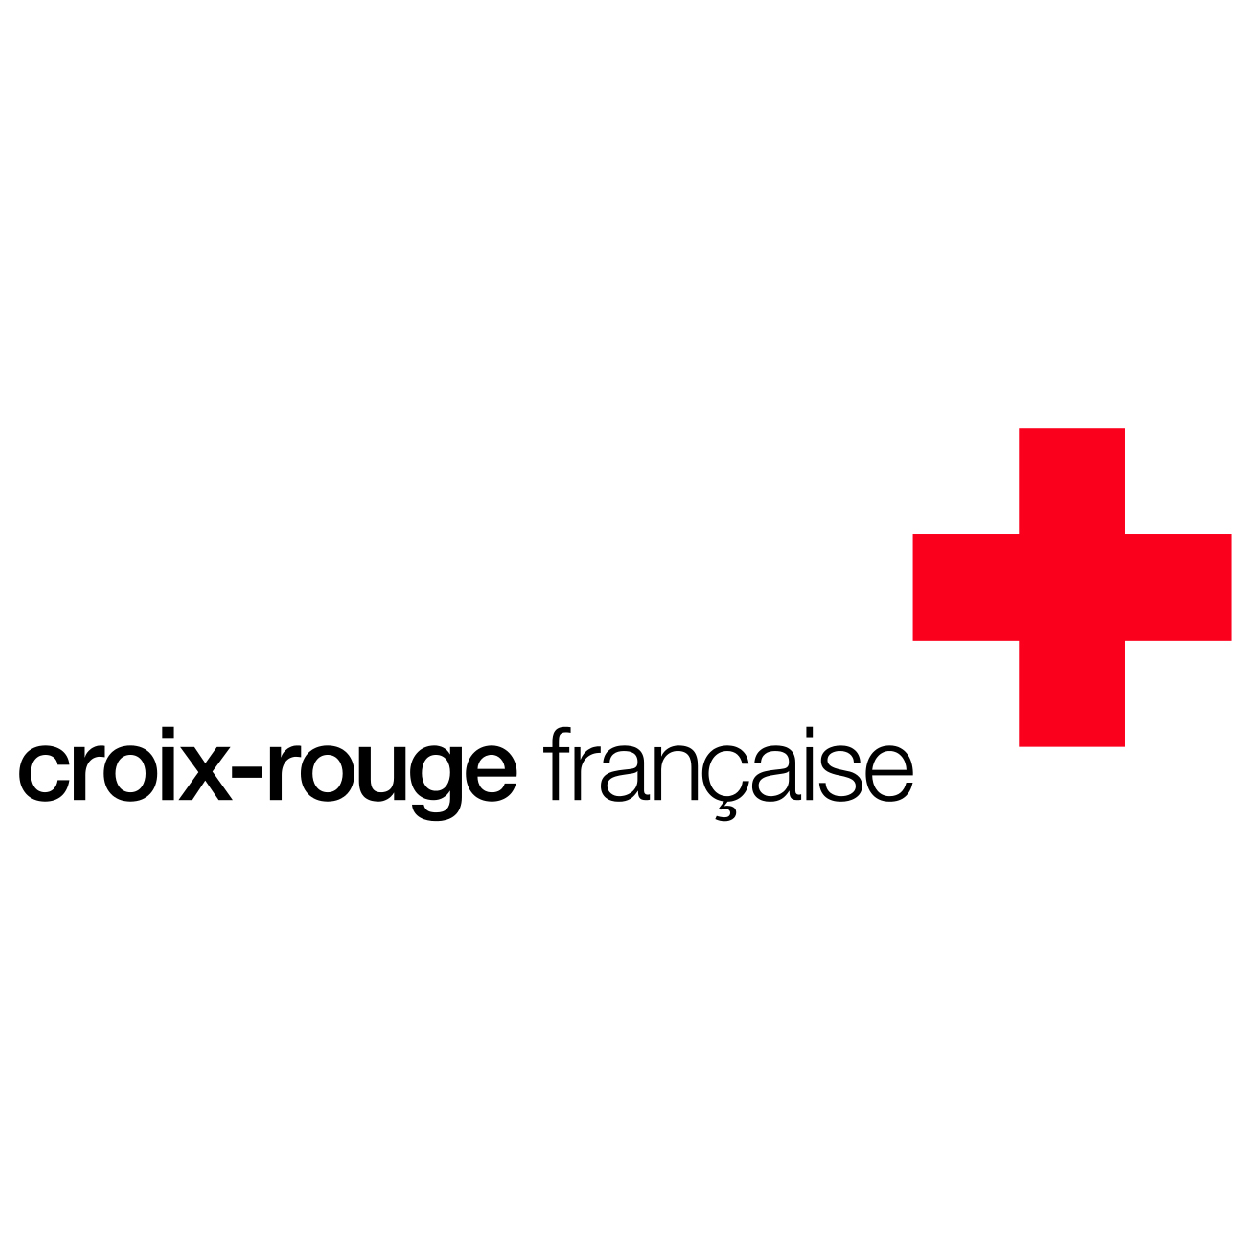 Logo Croix-rouge française